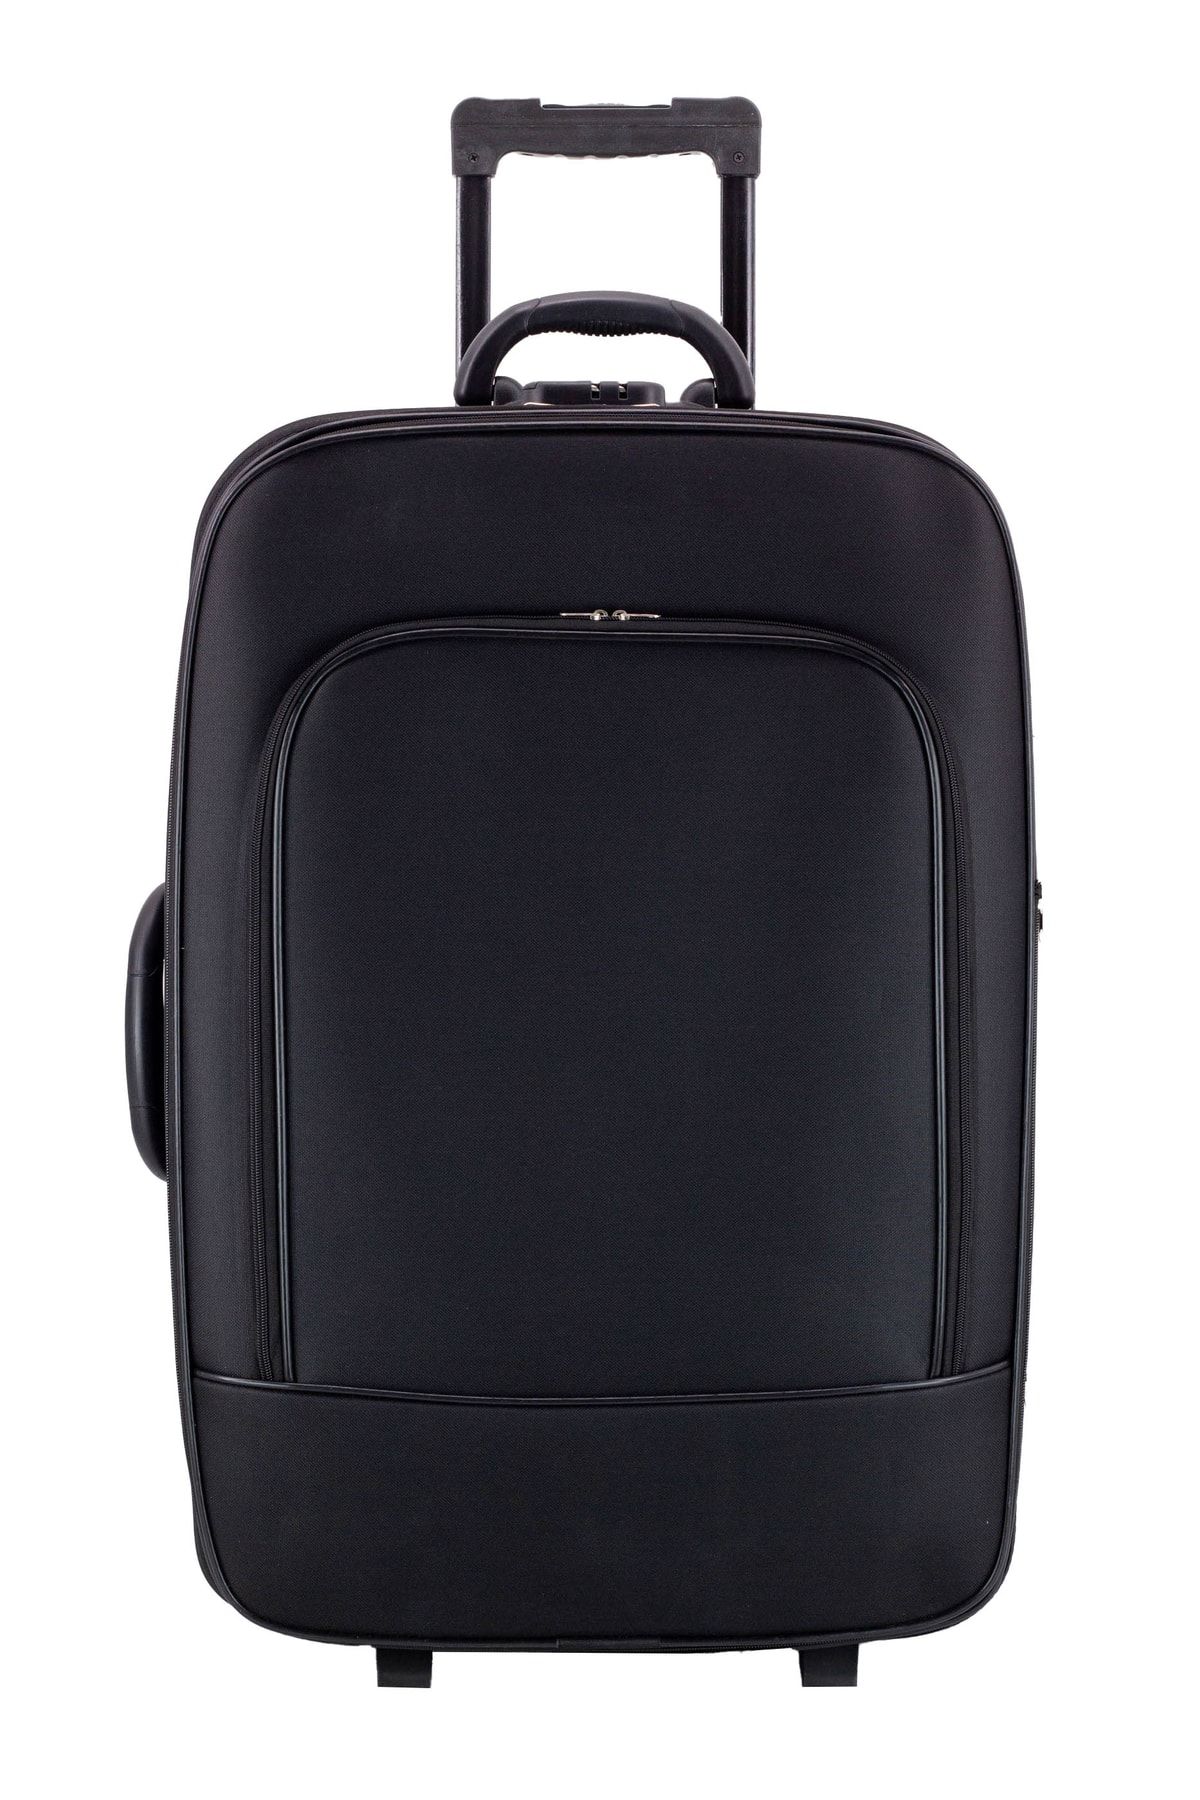 KAFF Ekonomik Unisex Kumaş Siyah Kırılmaz 2 Tekerlekli Önü Cepli Büyük Boy Valiz&bavul